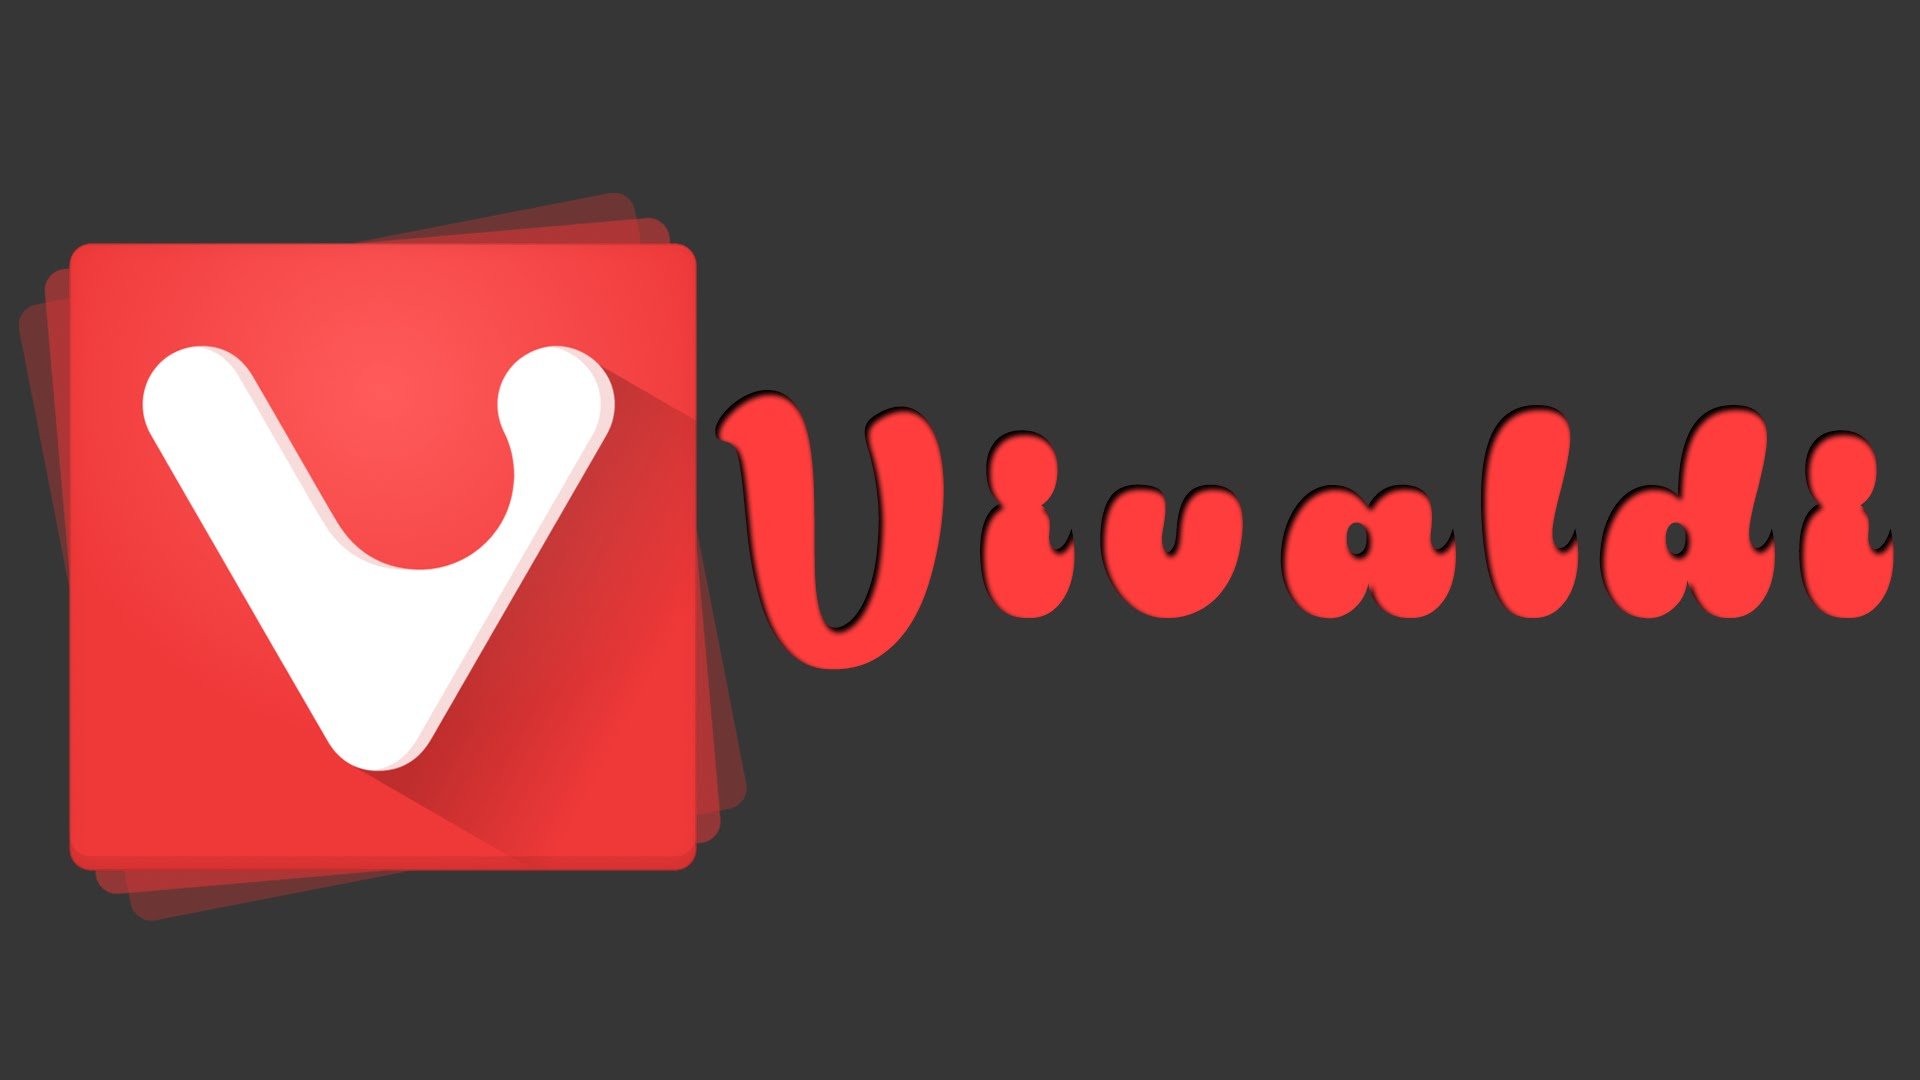 Vivaldi logo